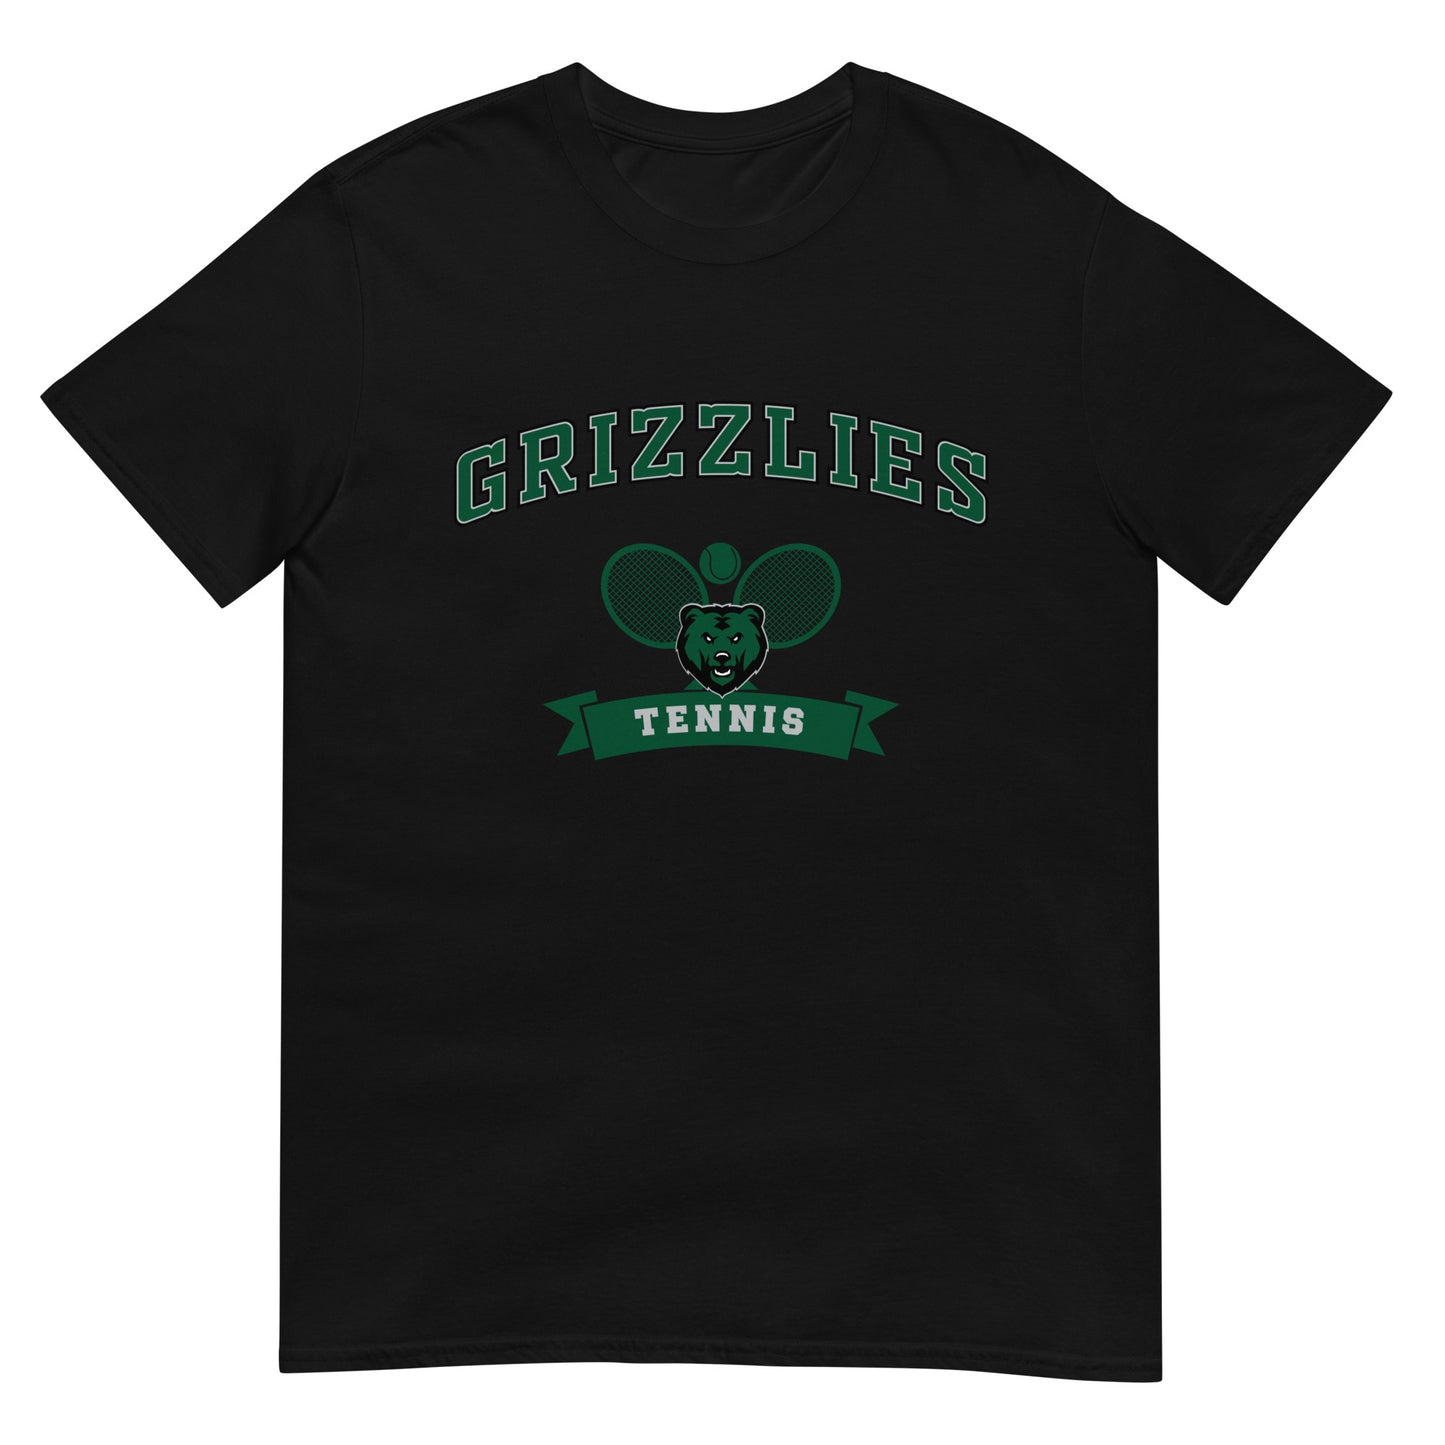 Grizzlies Tennis Short-Sleeve Unisex T-Shirt